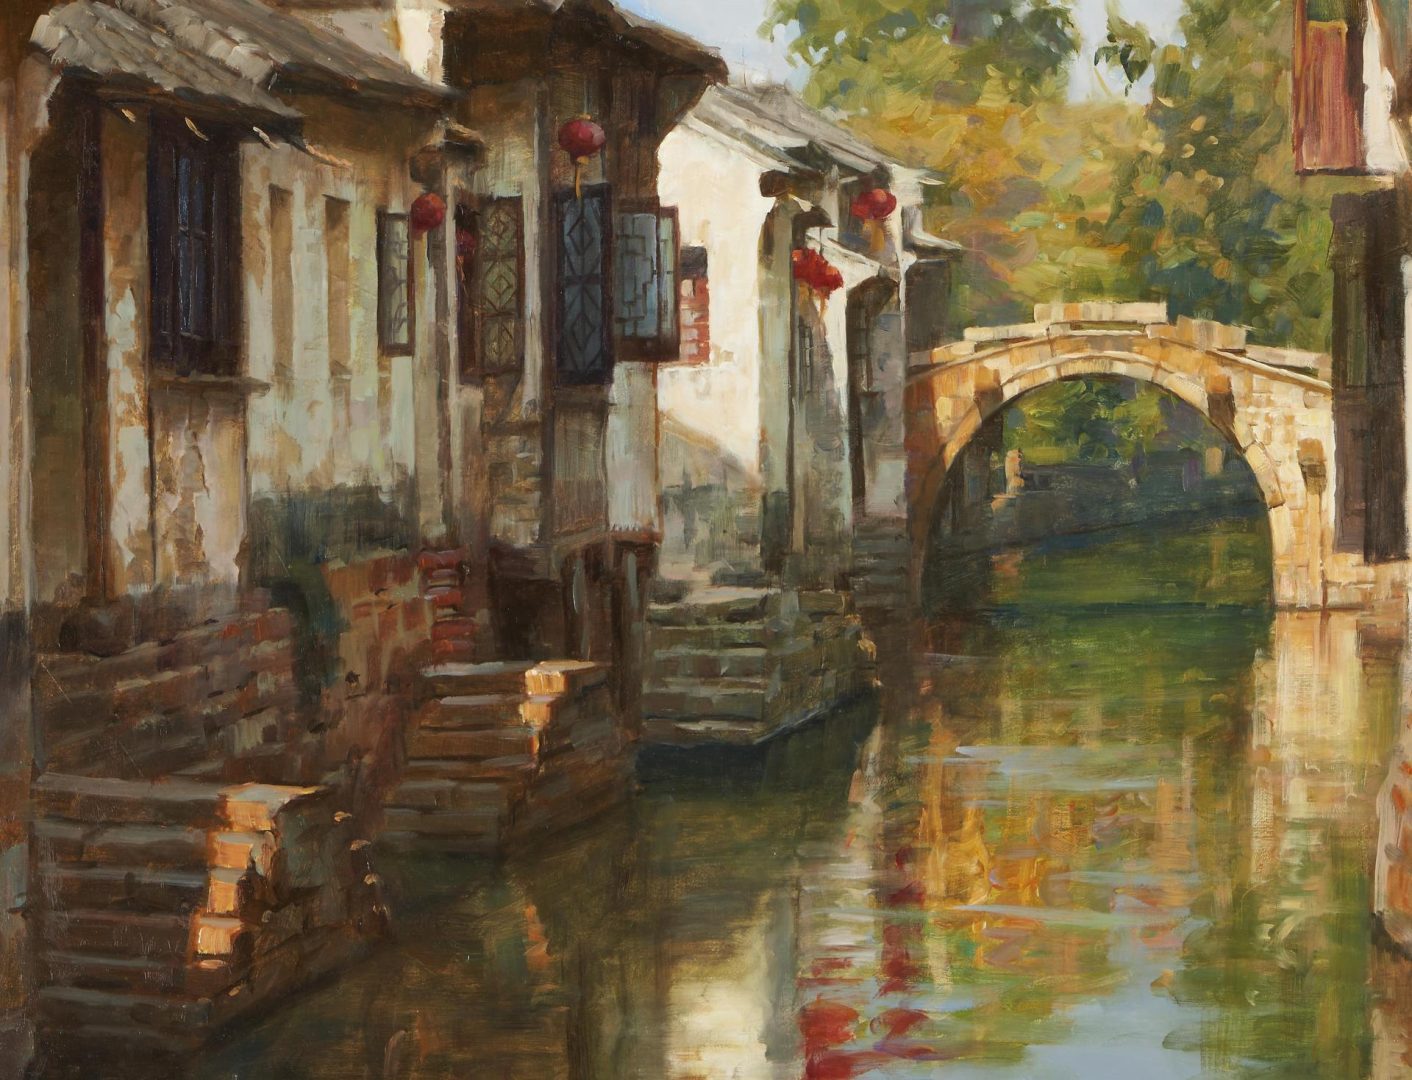 Lot 329: 2 Chinese Canal Paintings, incl. Jie Wei Zhou, Huang Youwei